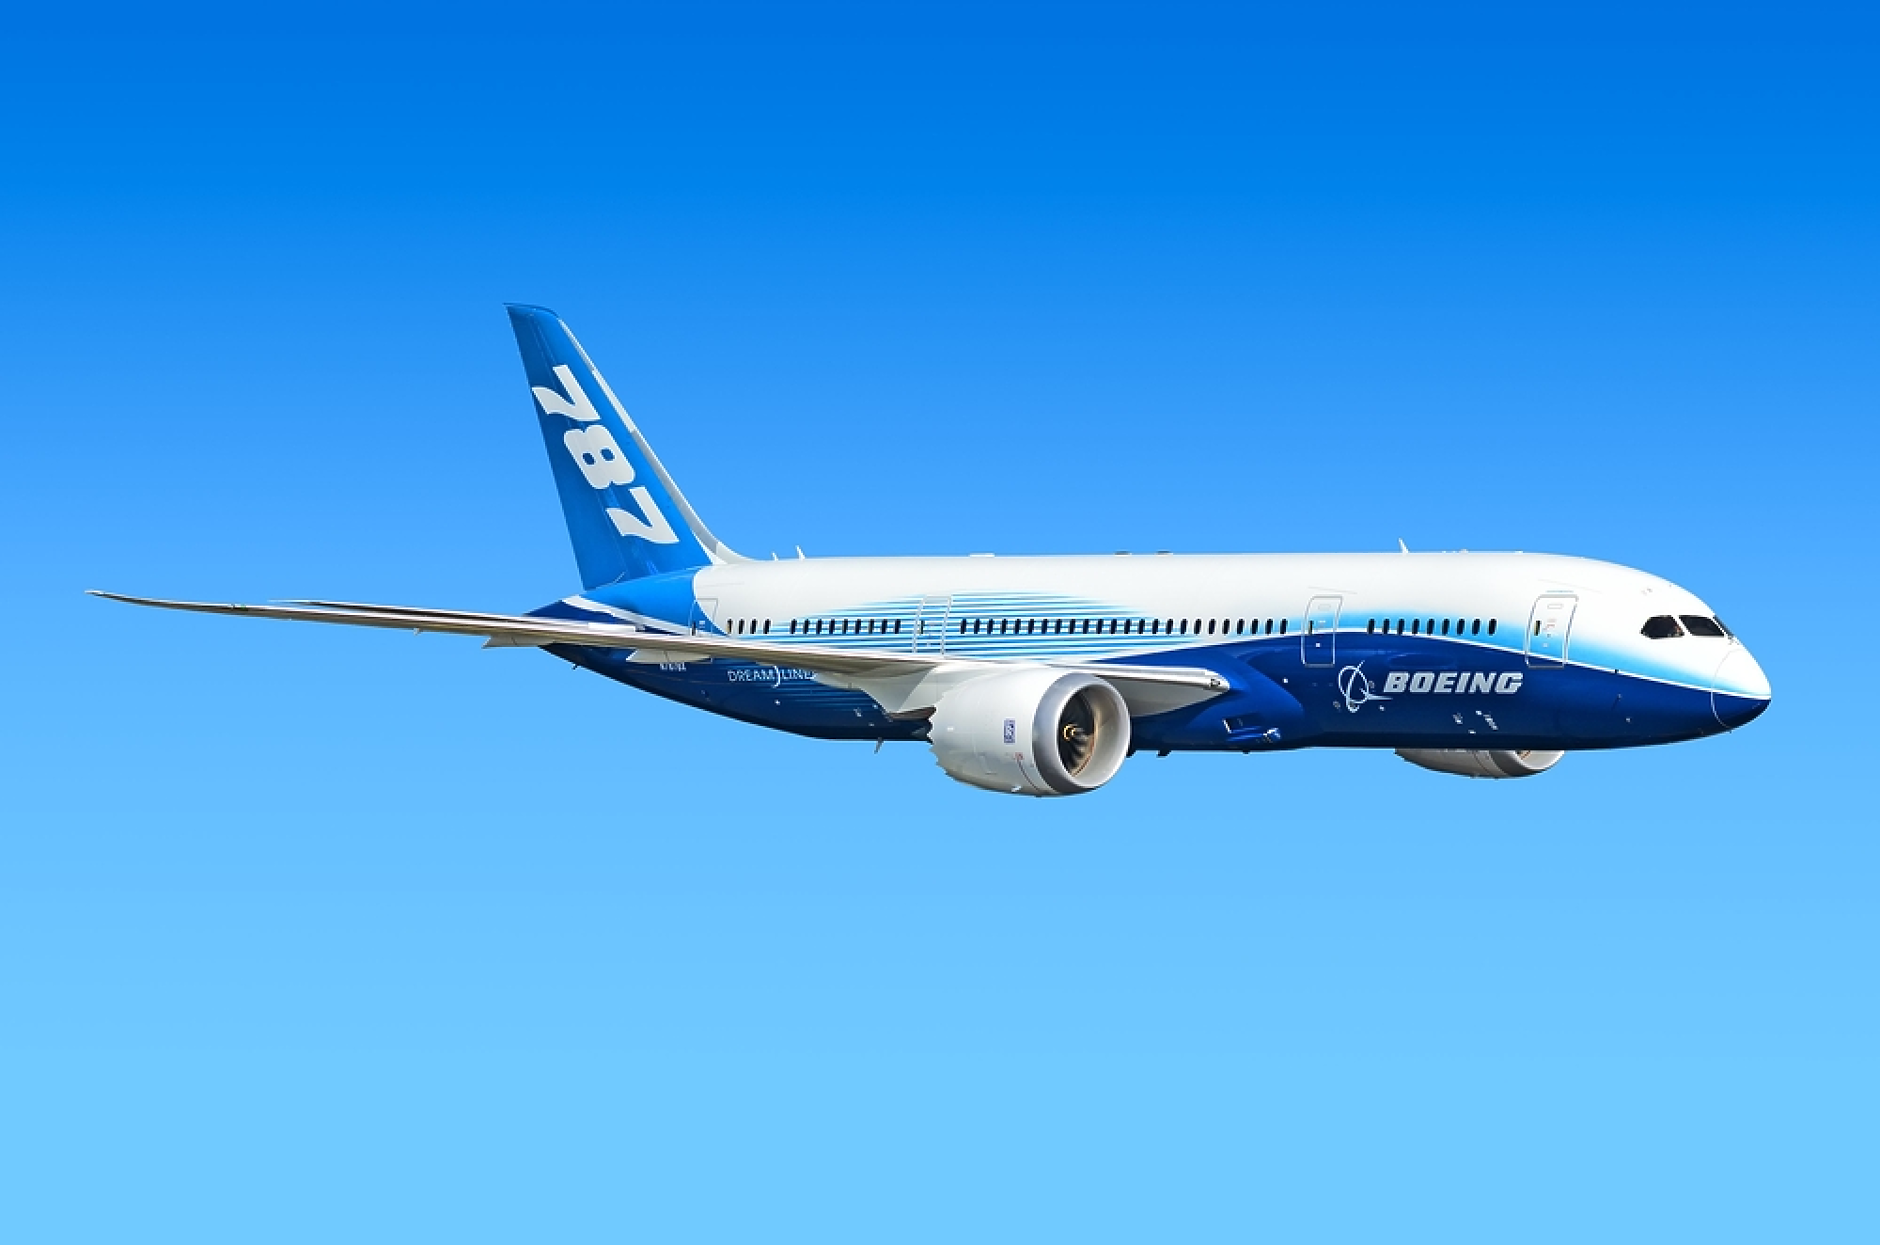 САЩ започнаха ново разследване на Boeing заради съмнения за проверка на  самолети